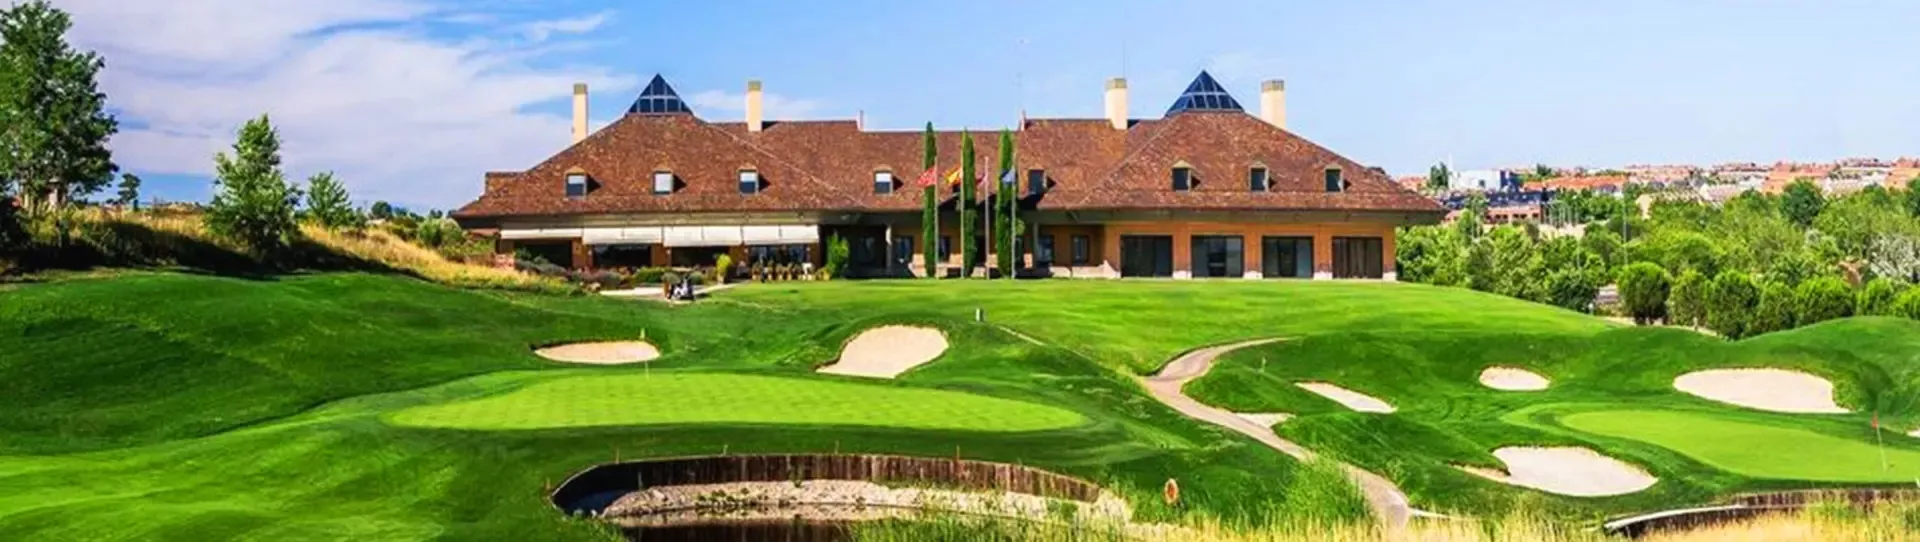 Spain golf courses - Centro Nacional de Golf - Photo 1